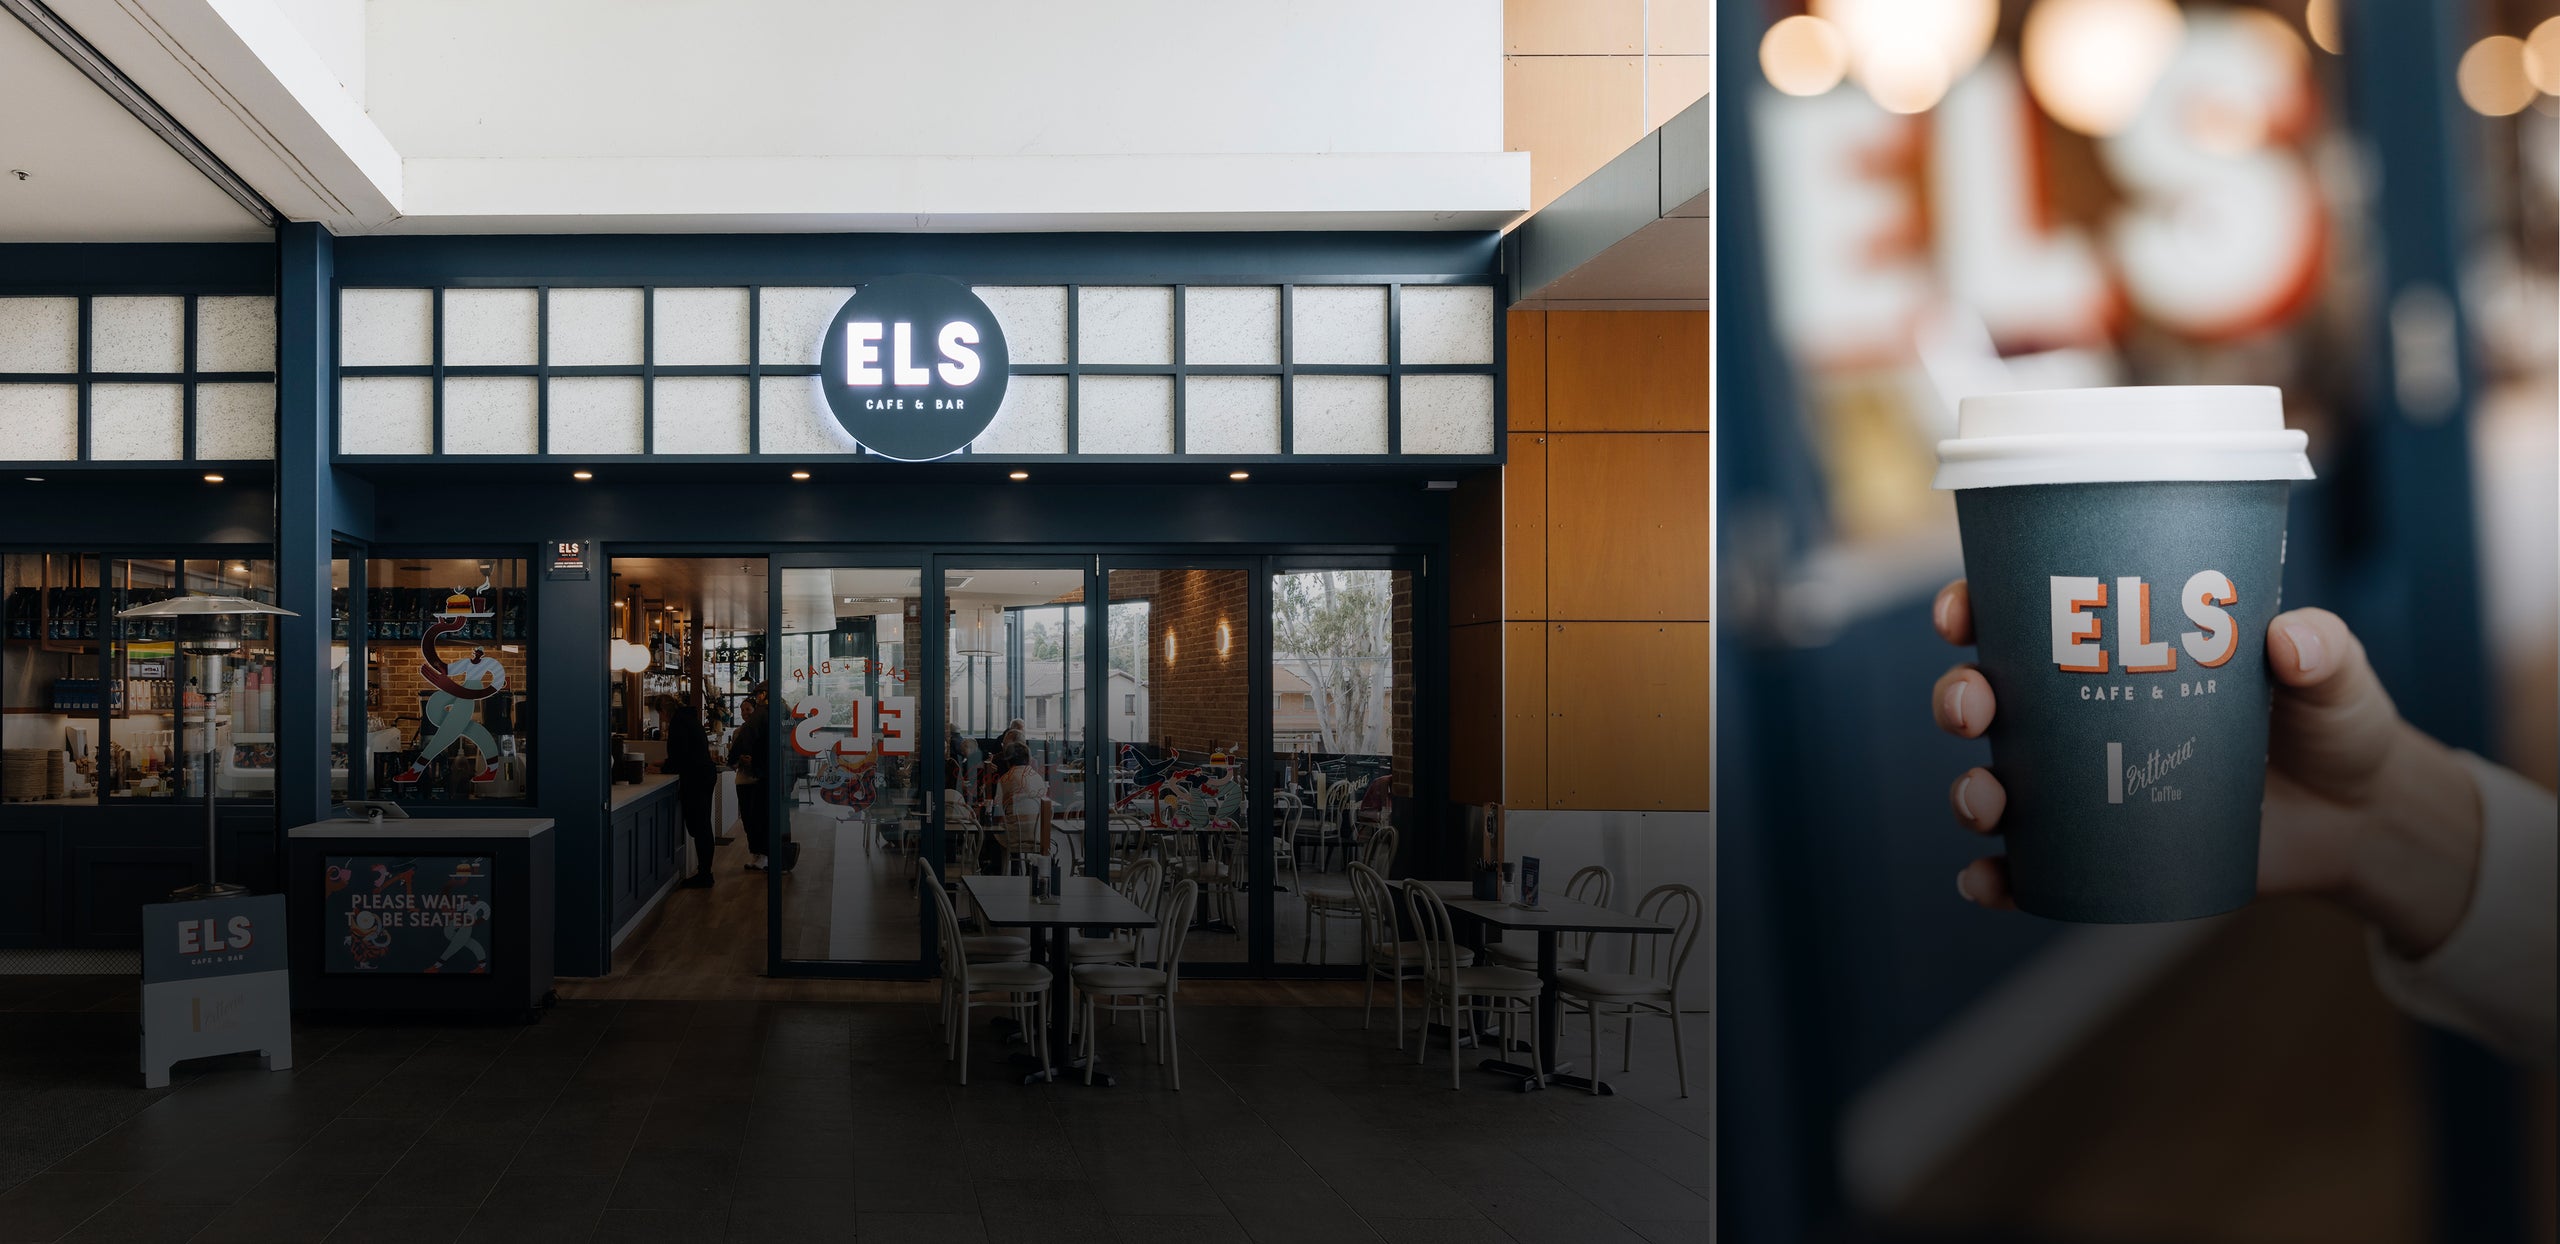 ELS Cafe & Bar